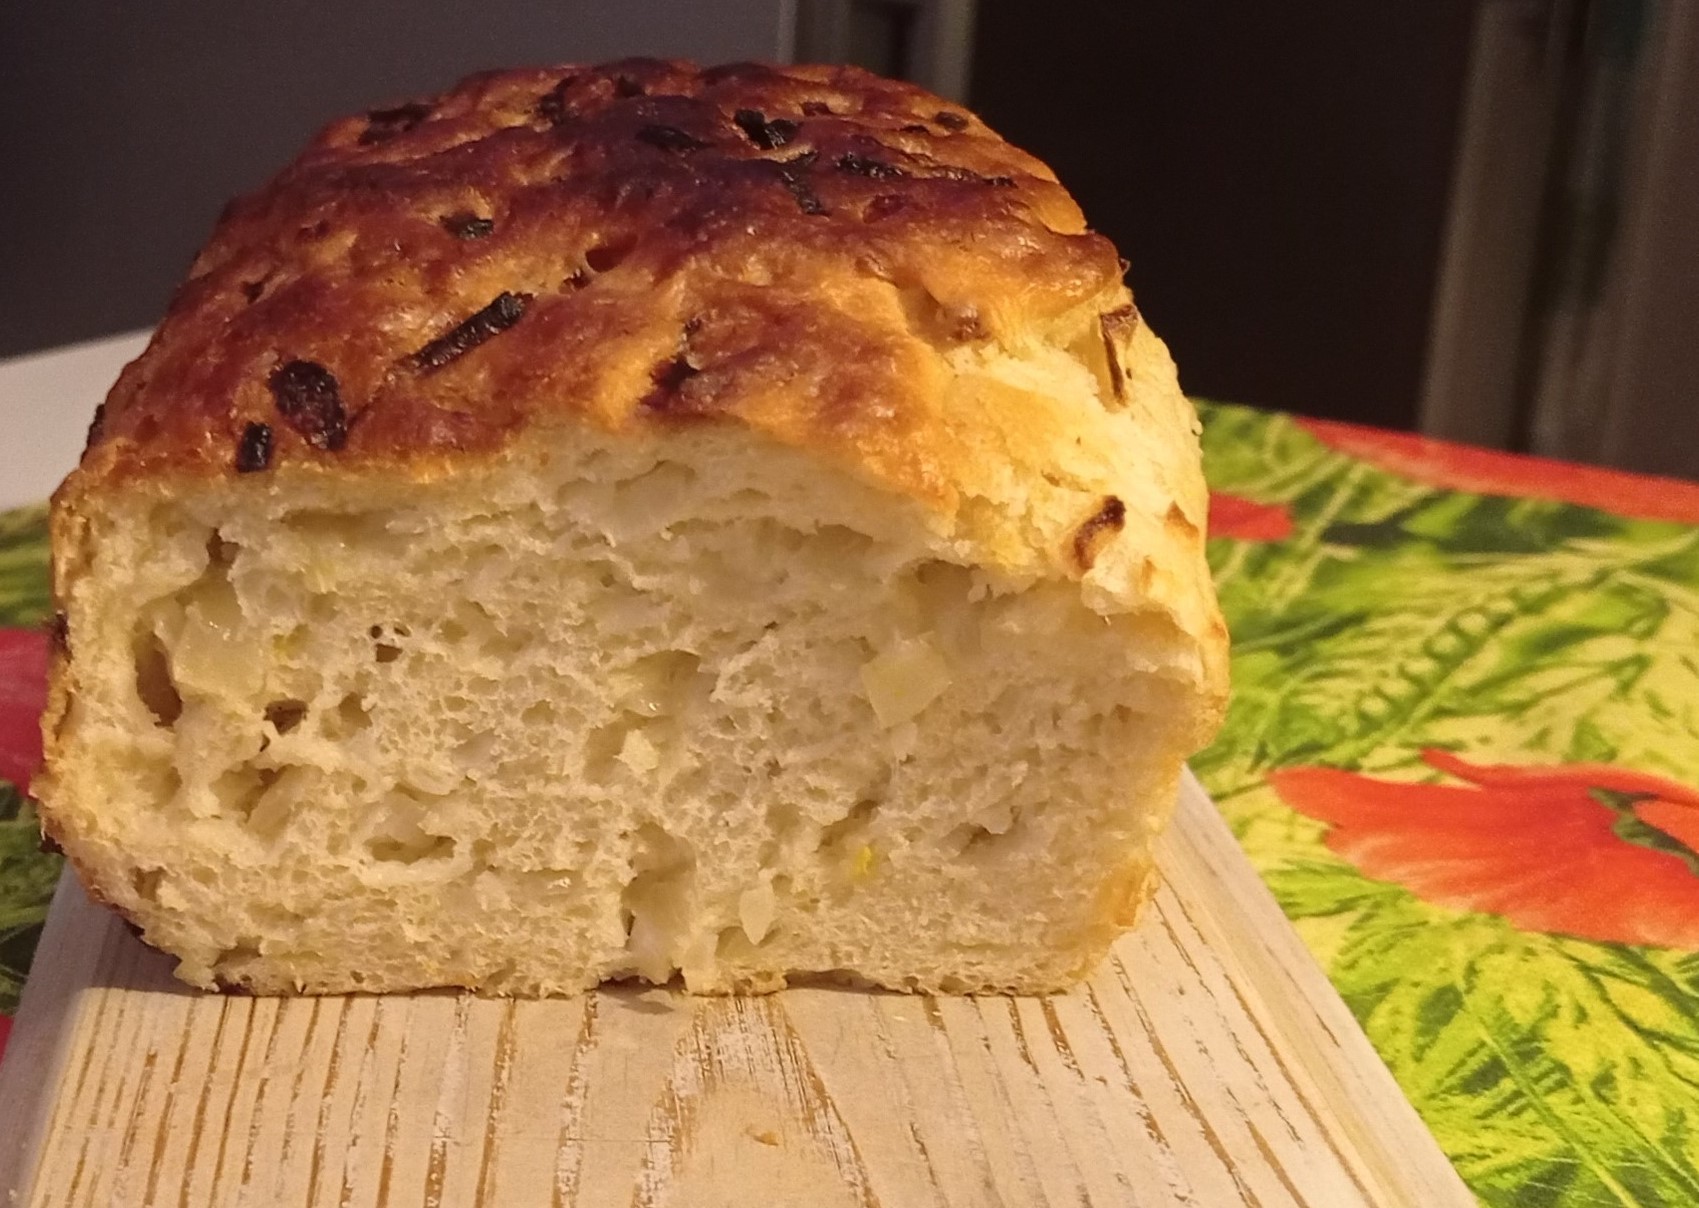 Как приготовить Домашний хлеб без хлебопечки рецепт пошагово